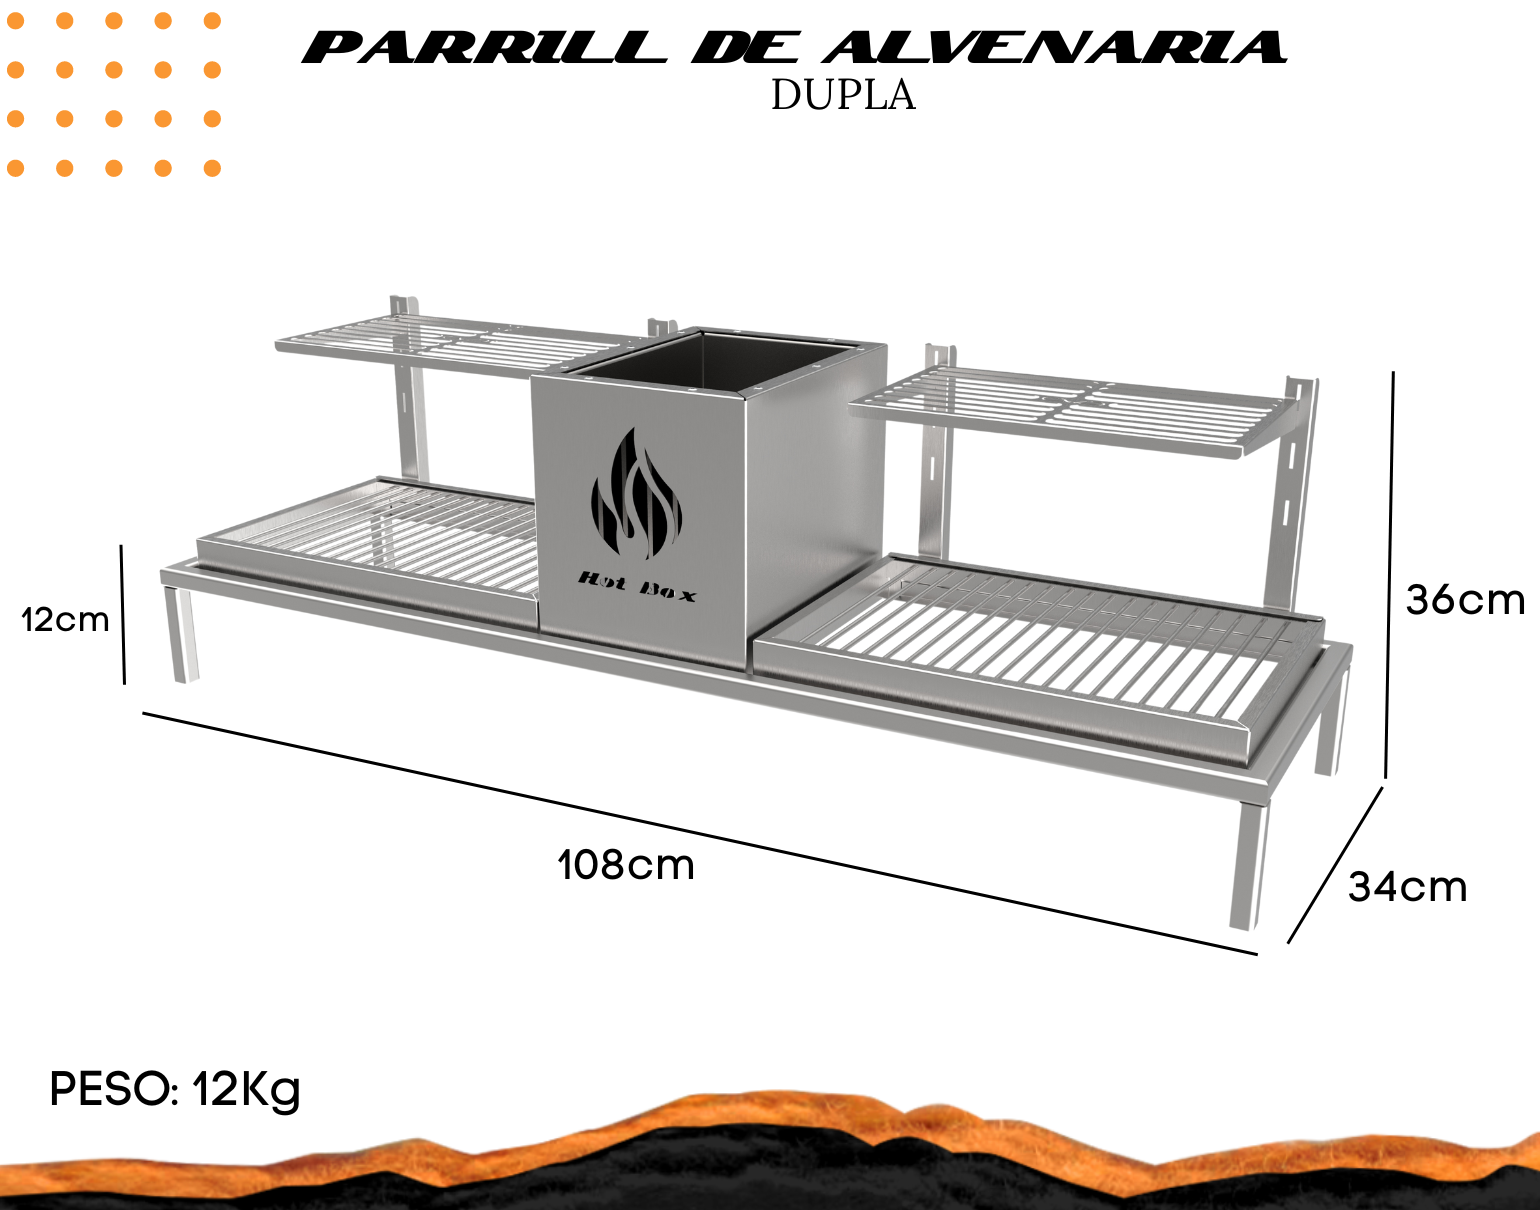 Churrasqueira Hotbox Parrilla Para Alvenaria - 1 Firebox + 2 Grelhas Uruguaia - 2